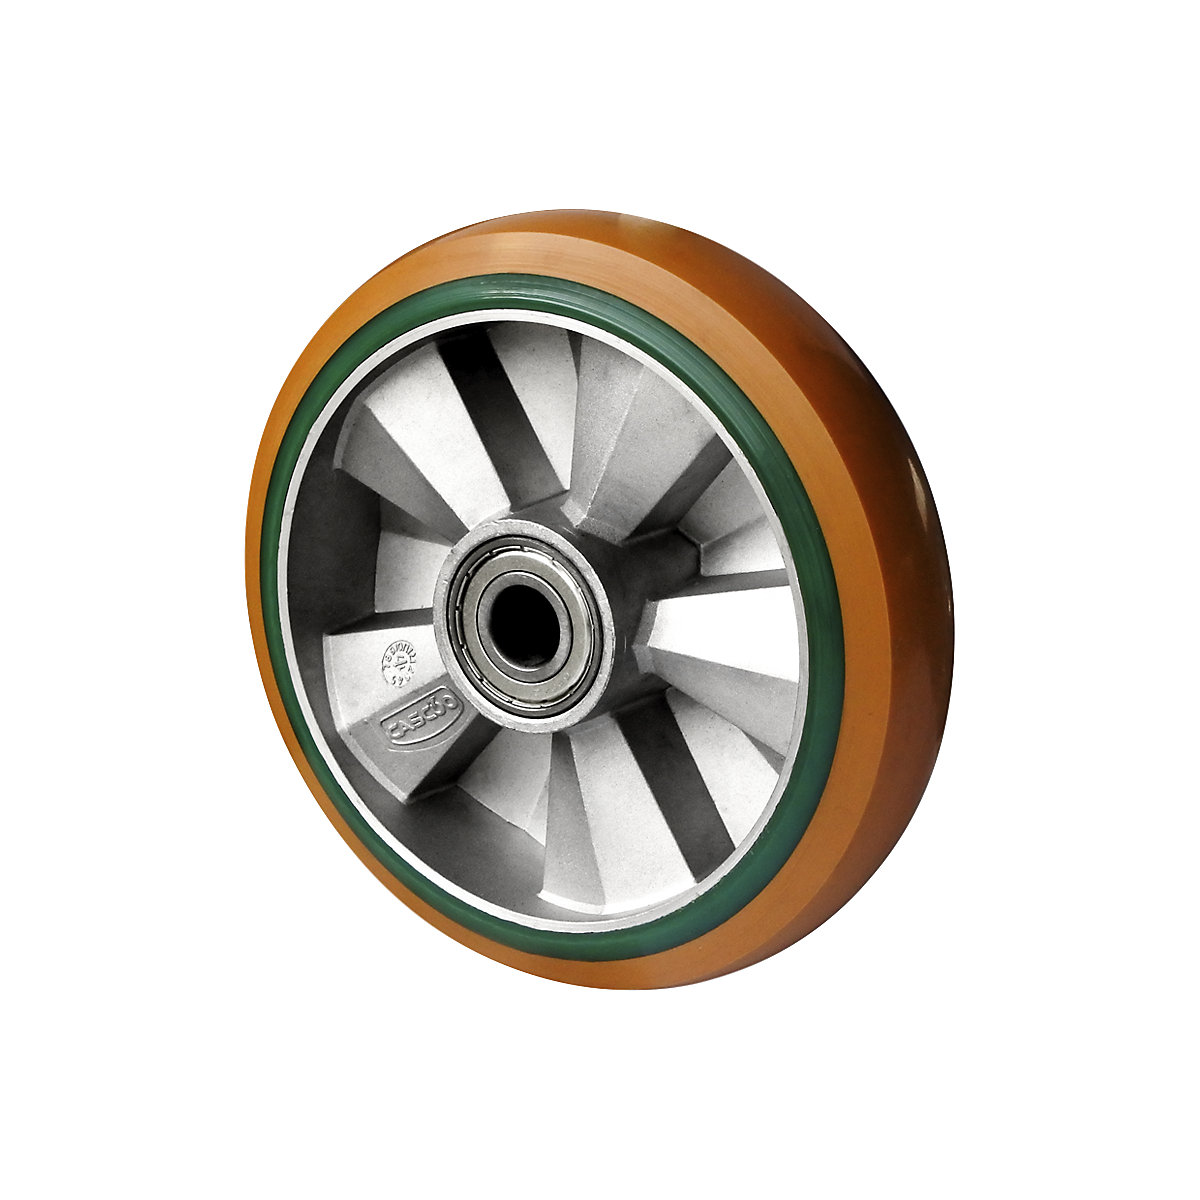 Roue en PU et PU élastique brun/vert, double roulement à billes, à partir de 2 pièces, Ø x largeur roue 200 x 50 mm-1